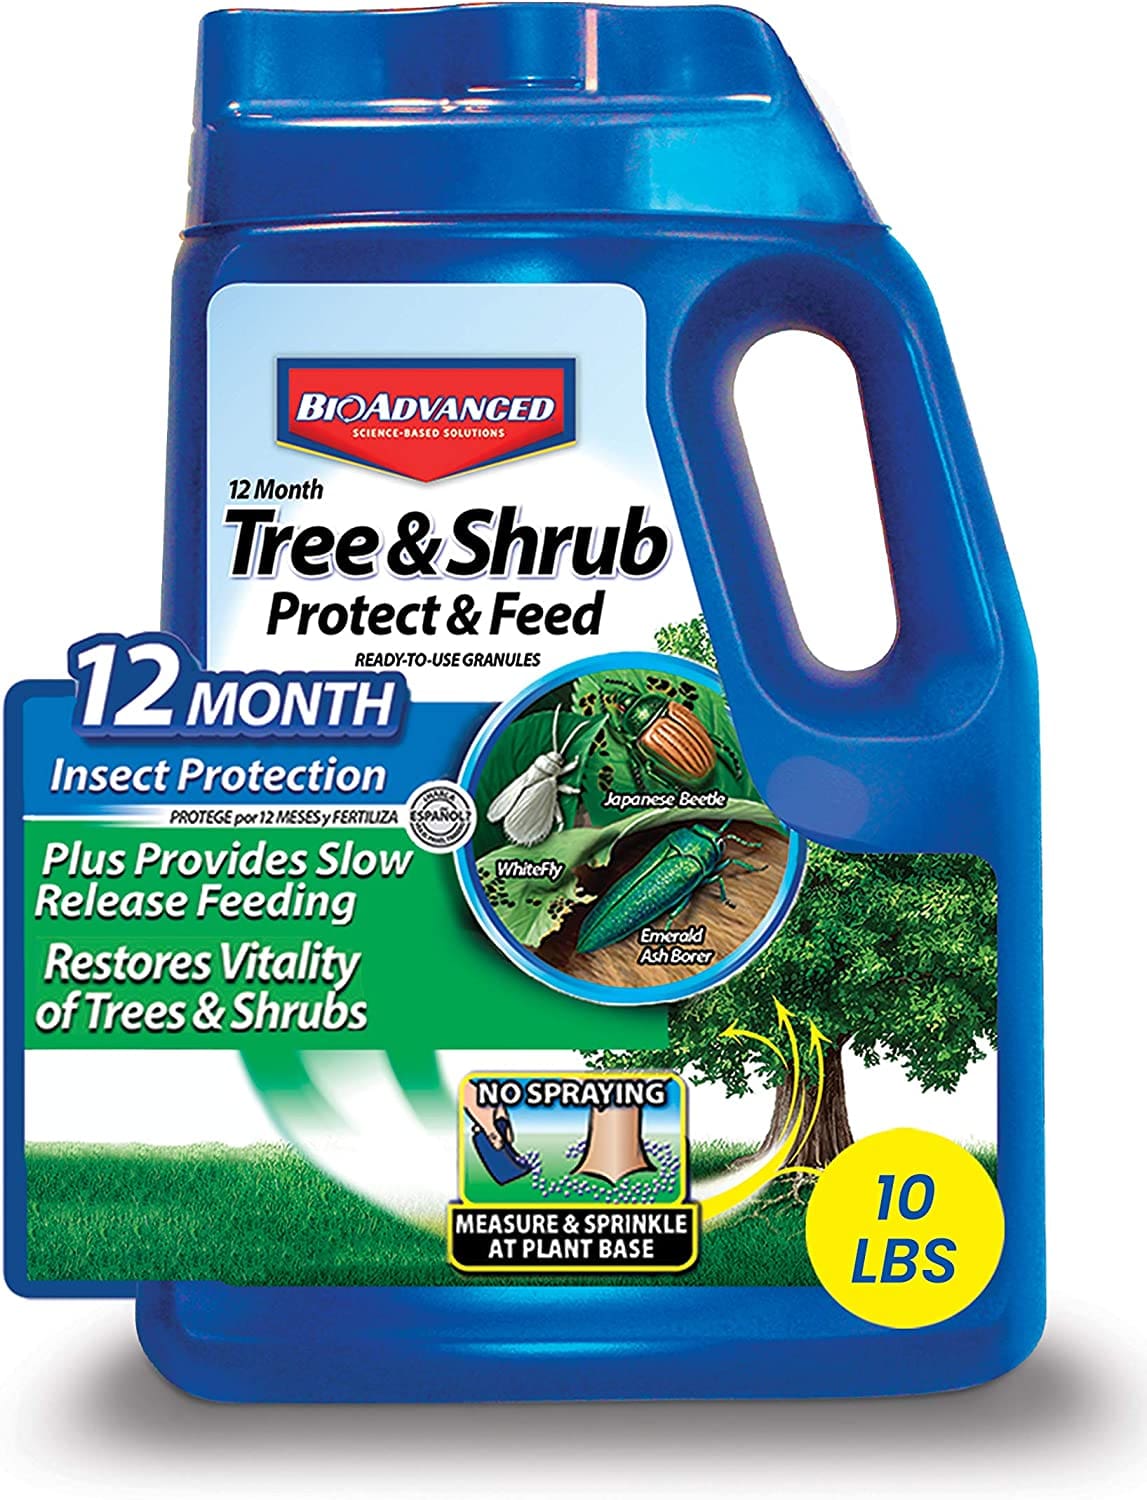 大麻蚜虫预防与治理方案之长效蓝瓶护根水 Bio Advanced Tree & Shrub Protect & Feed